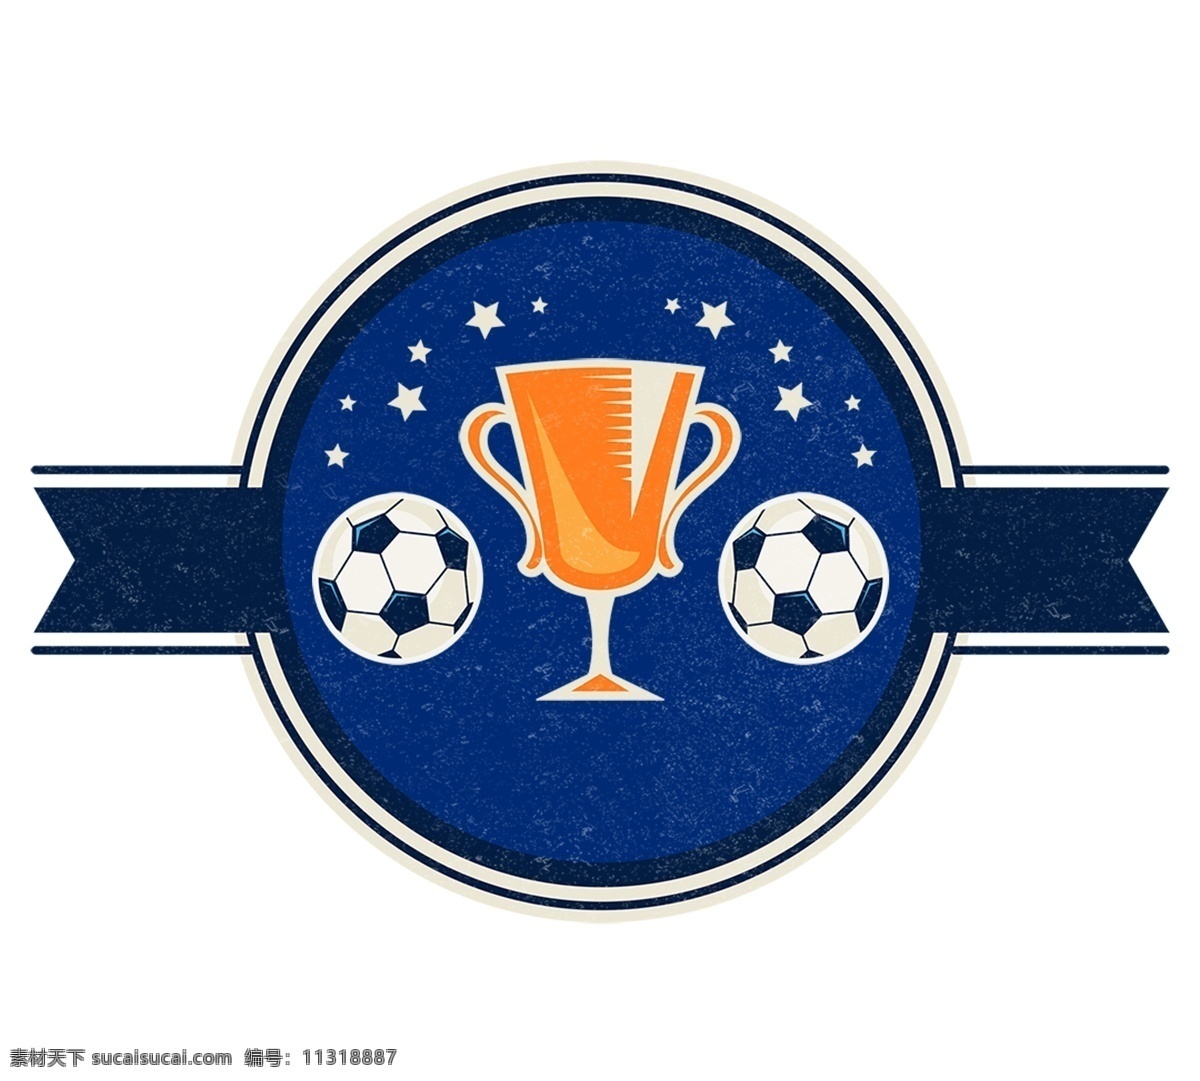 足球 对抗赛 俱乐部 元素 世界杯 啤酒节 踢足球 欧冠决赛 足球比赛 足球对抗赛 预选赛 球迷 欧洲杯 球星